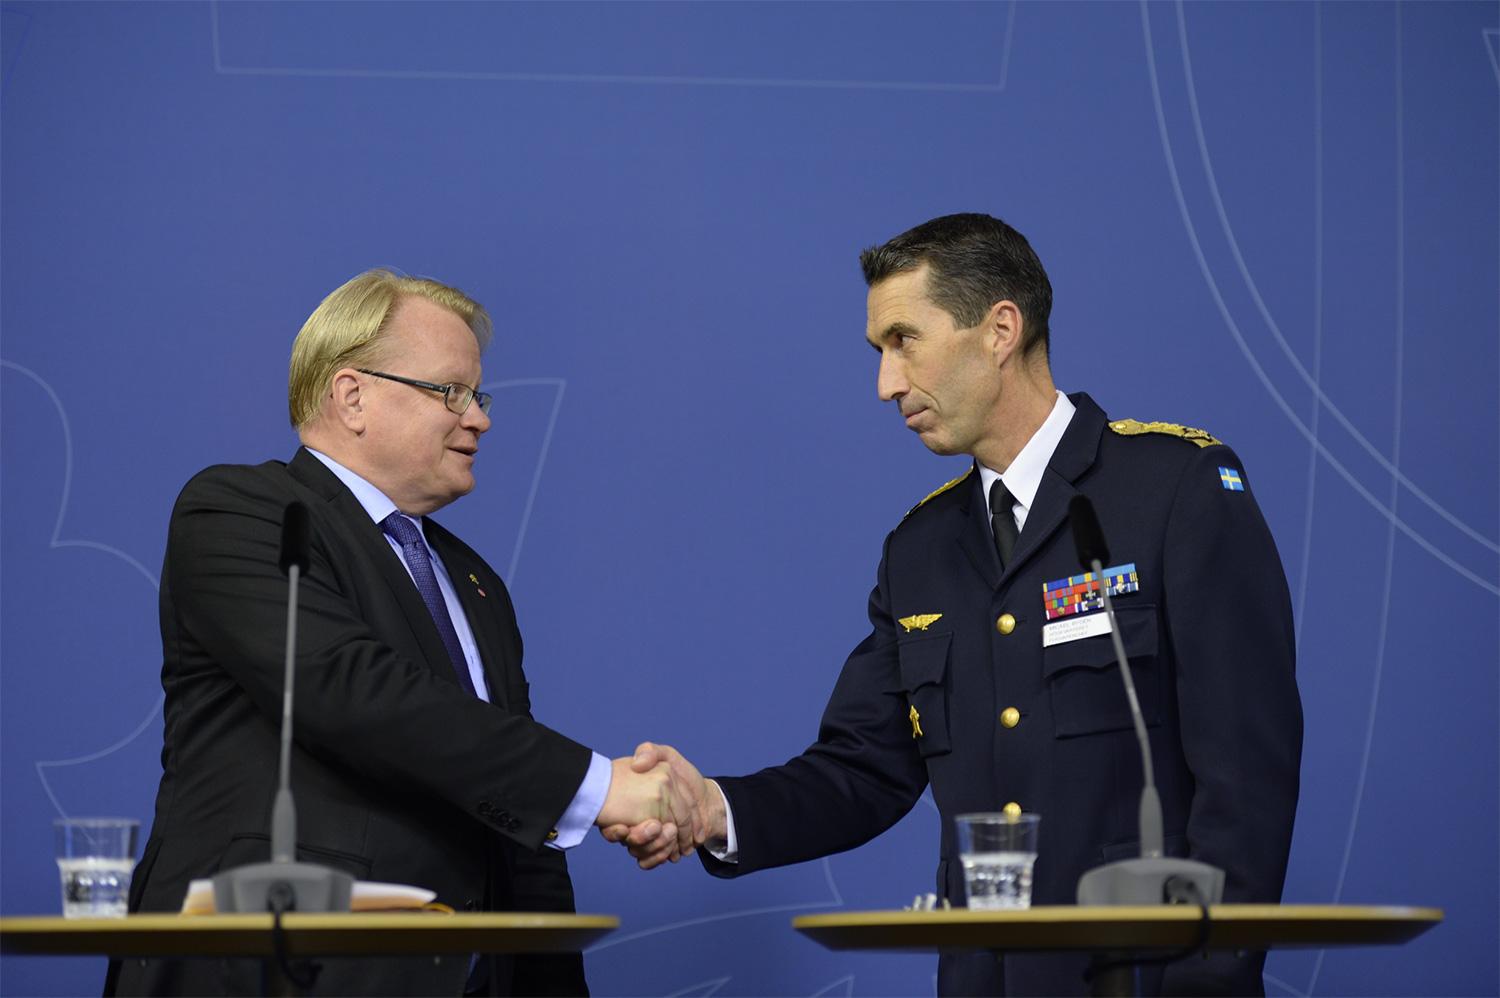 Försvarsminister Peter Hultqvist (S) presenterade i dag den nya överbefälhavaren Micael Bydén.